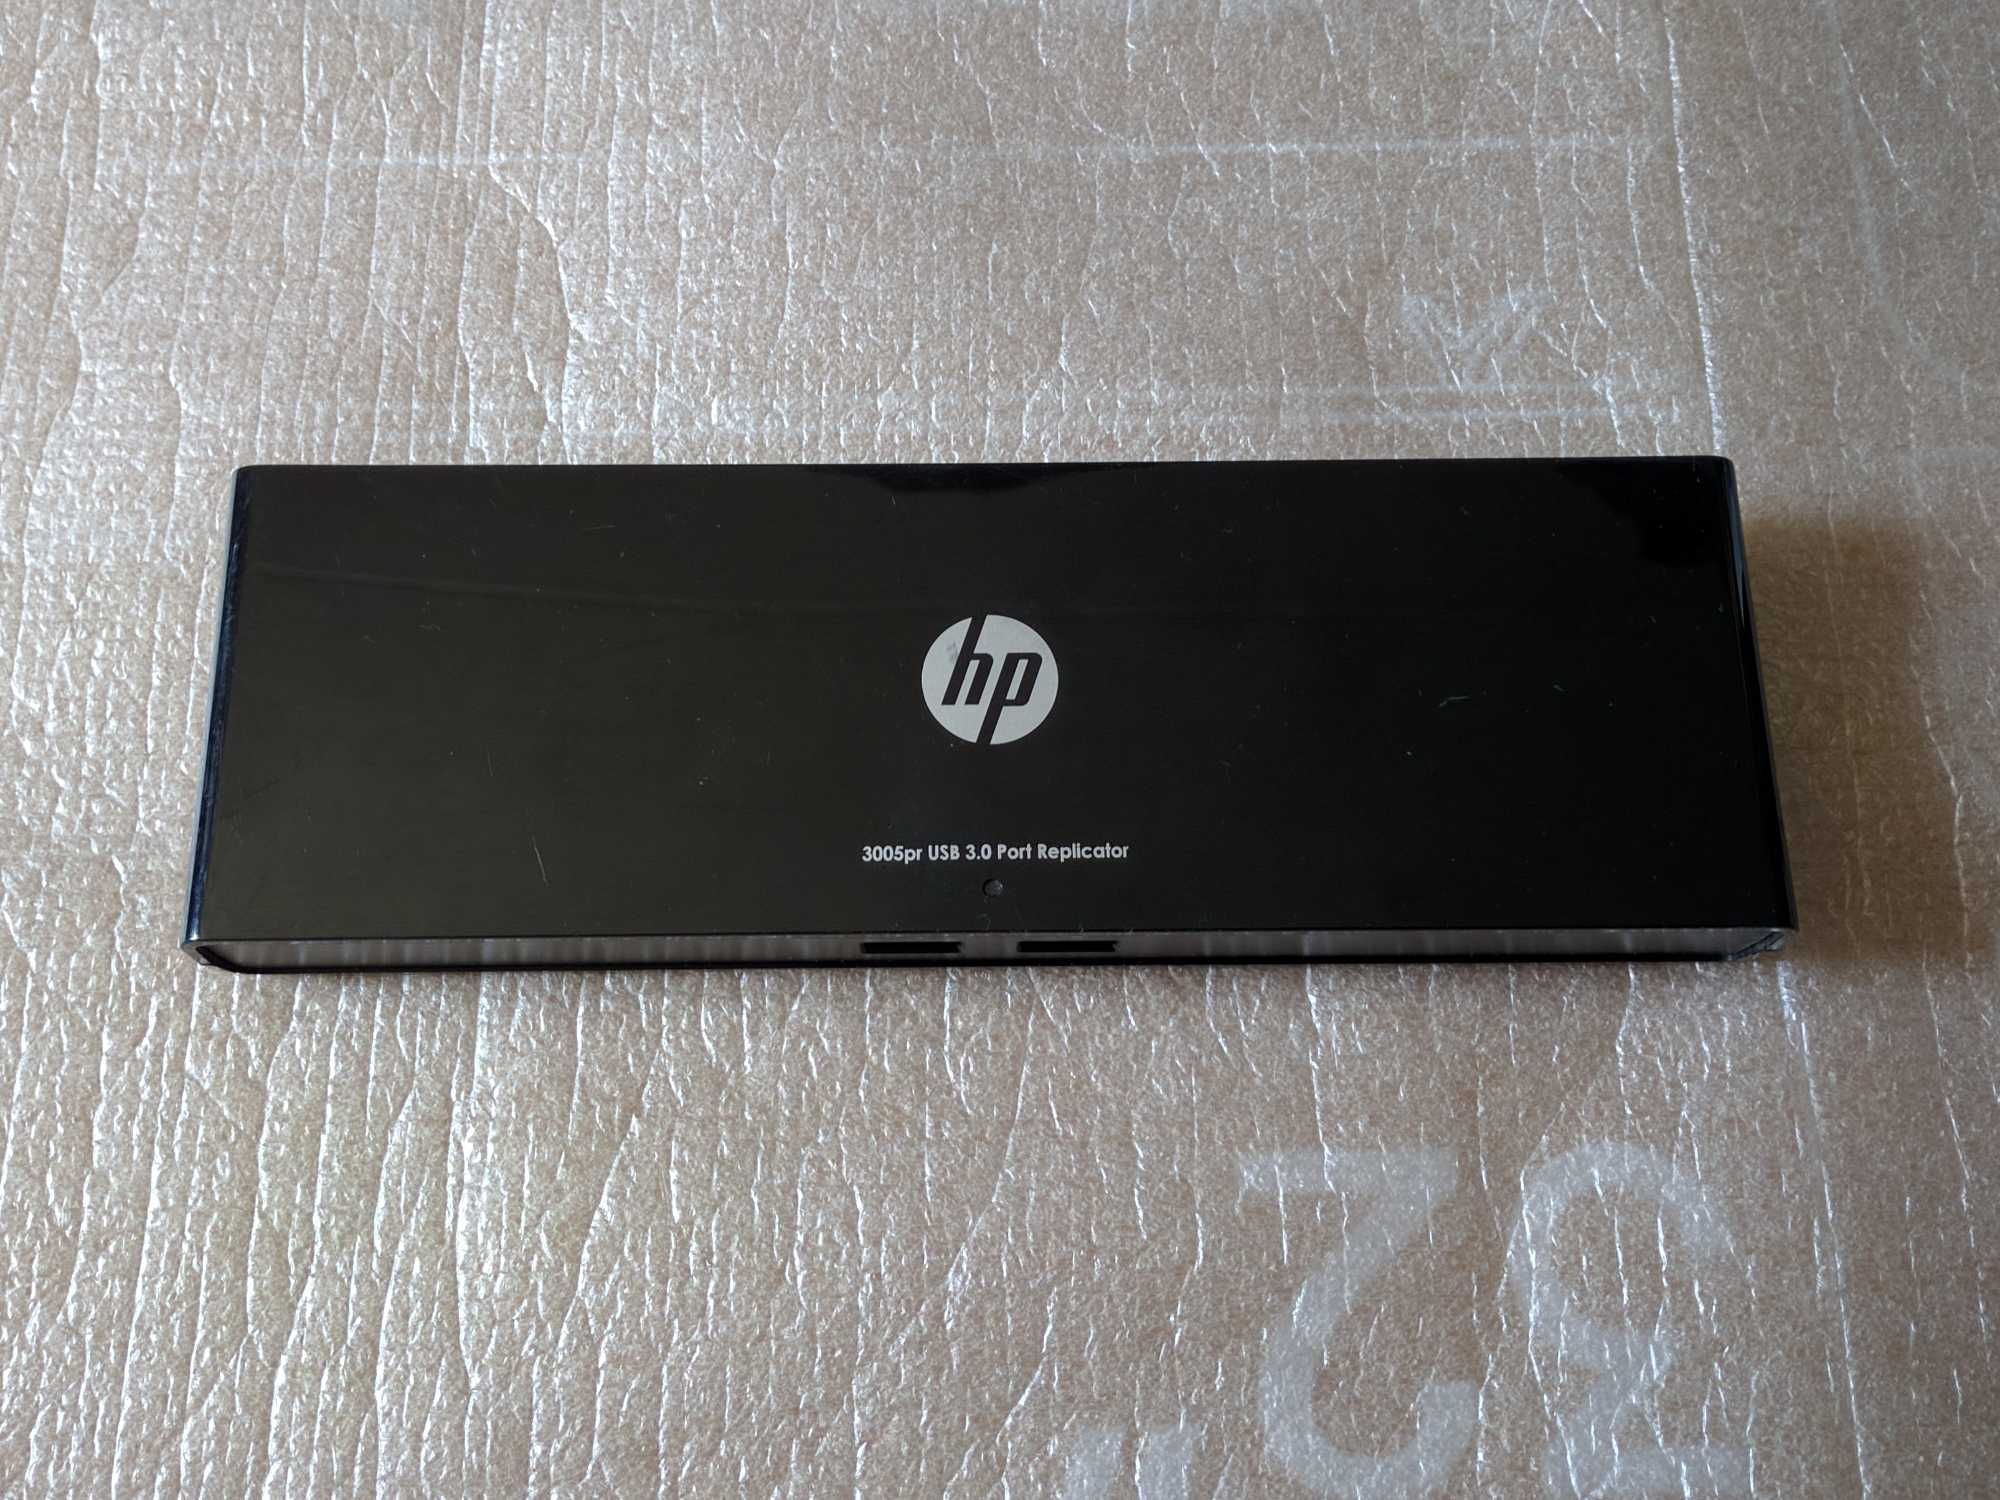 Док-станція HP USB 3.0 3005pr Port Replicator